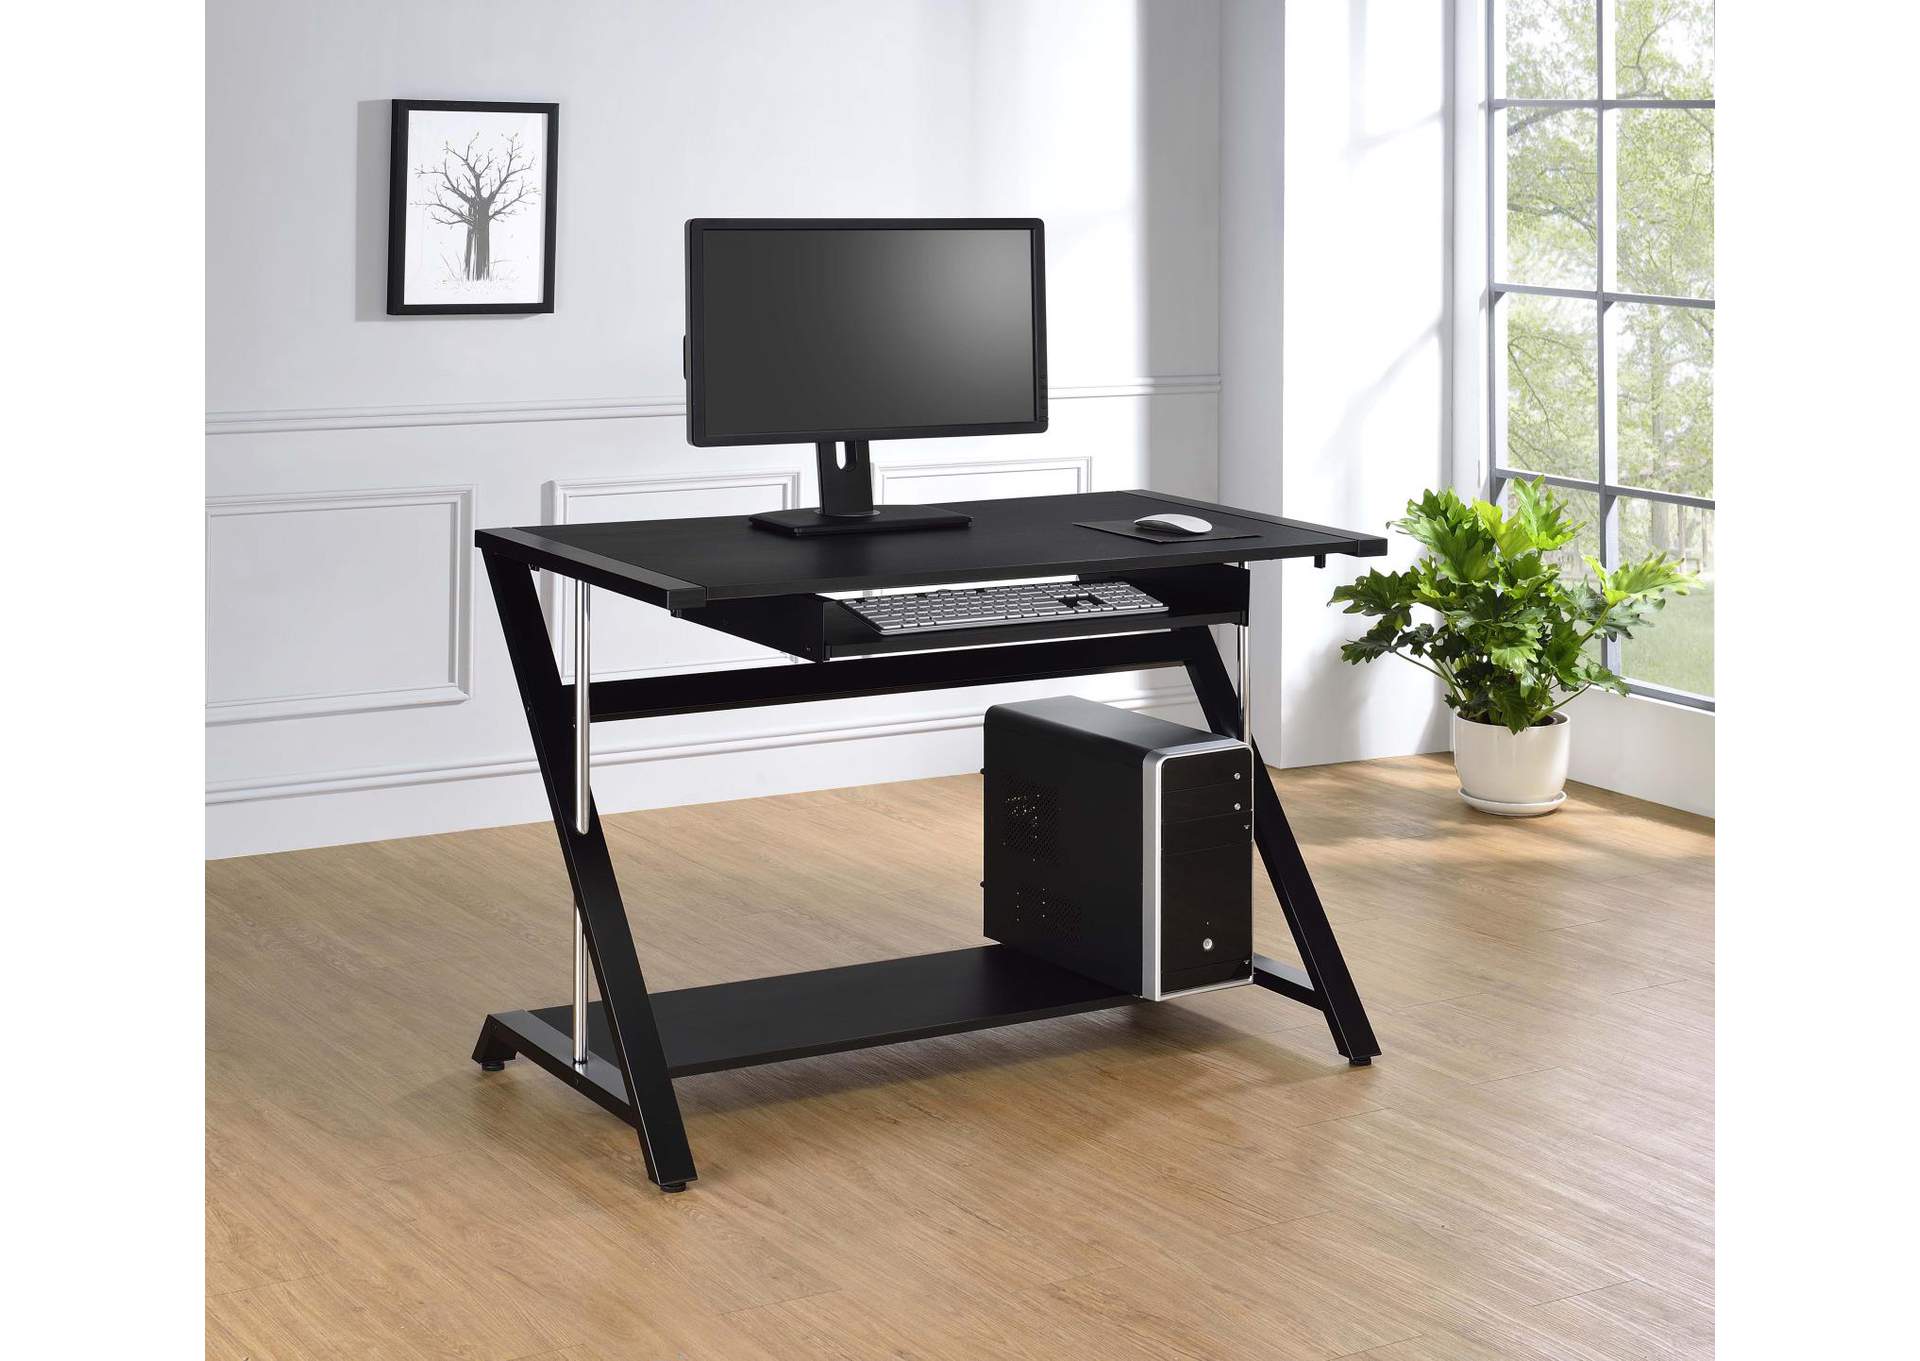 Black Contemporary Computer Desk,Coaster Furniture